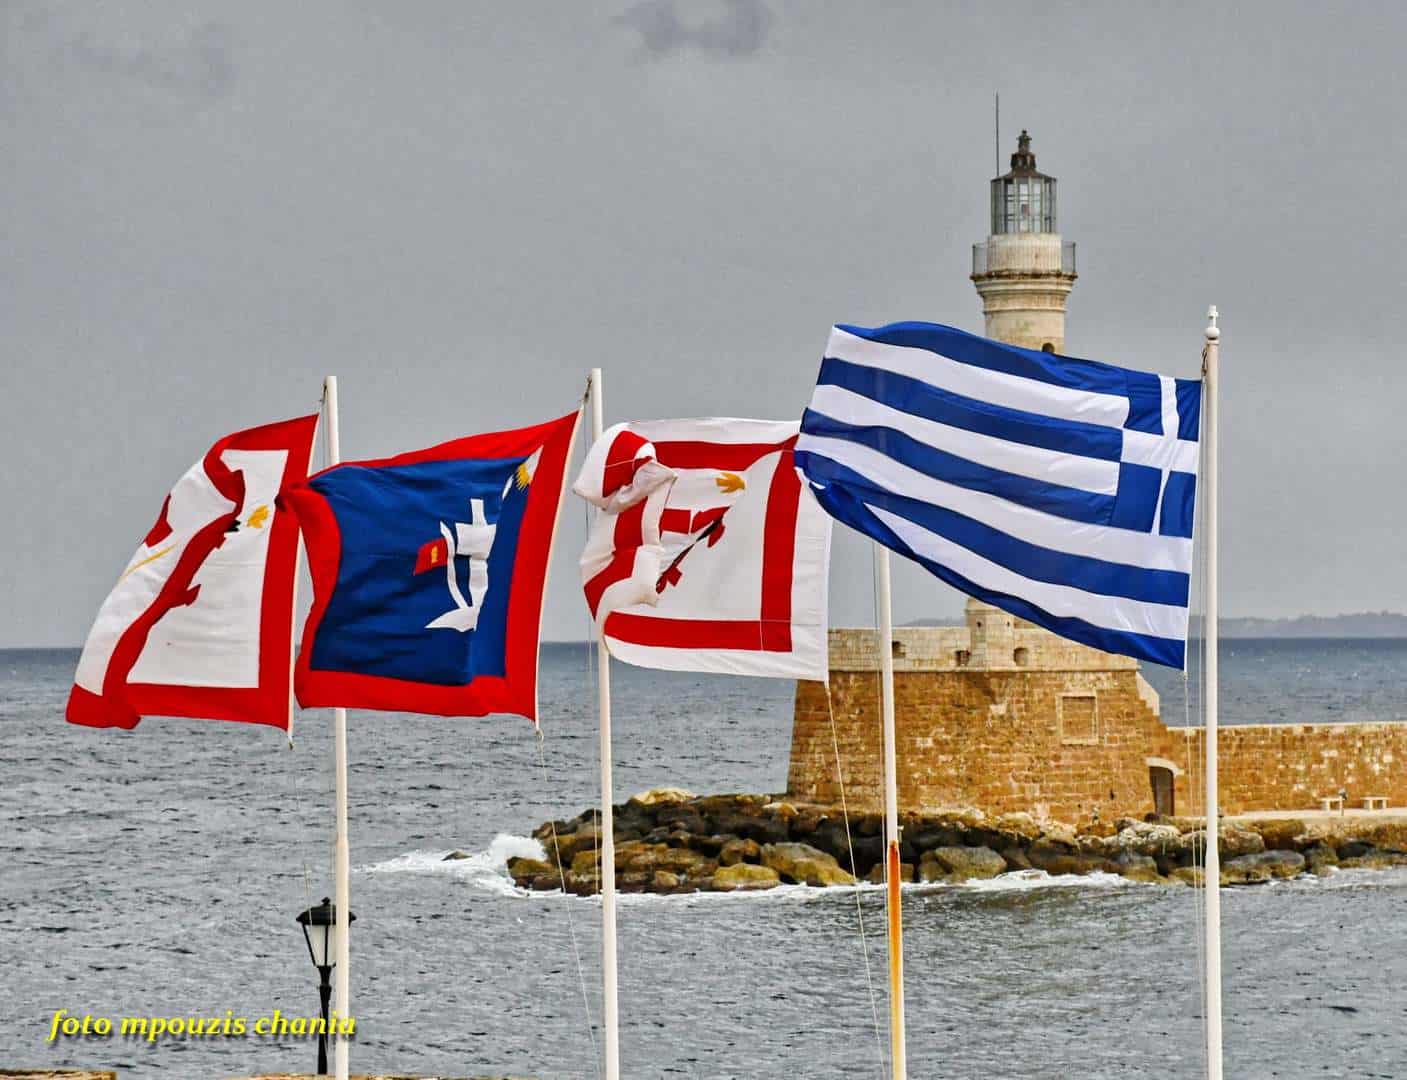 Χανιά: Φόρος τιμής στους επαναστάτες του 1821 από το Ναυτικό Μουσείο Κρήτης